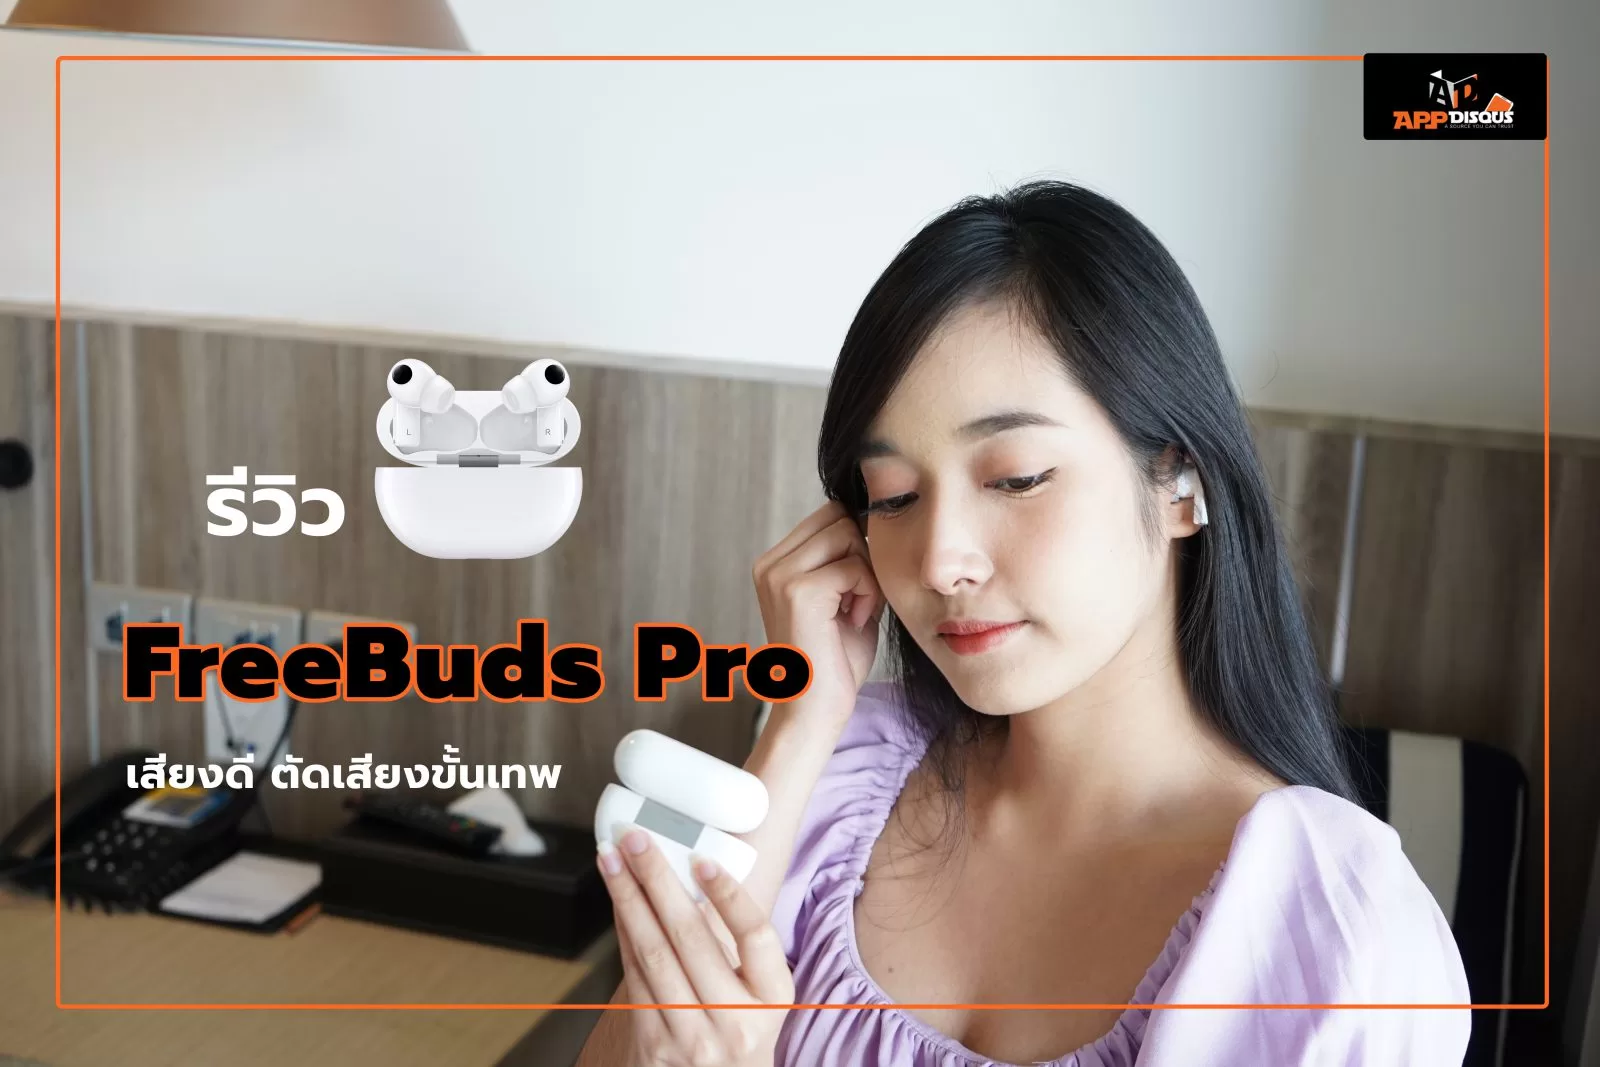 DSC00971 1 | FreeBuds Pro | รีวิว FreeBuds Pro หูฟัง TWS ไร้สายตัวท็อป ดีไซน์หรู เสียงดี ตัดเสียงขั้นเทพ